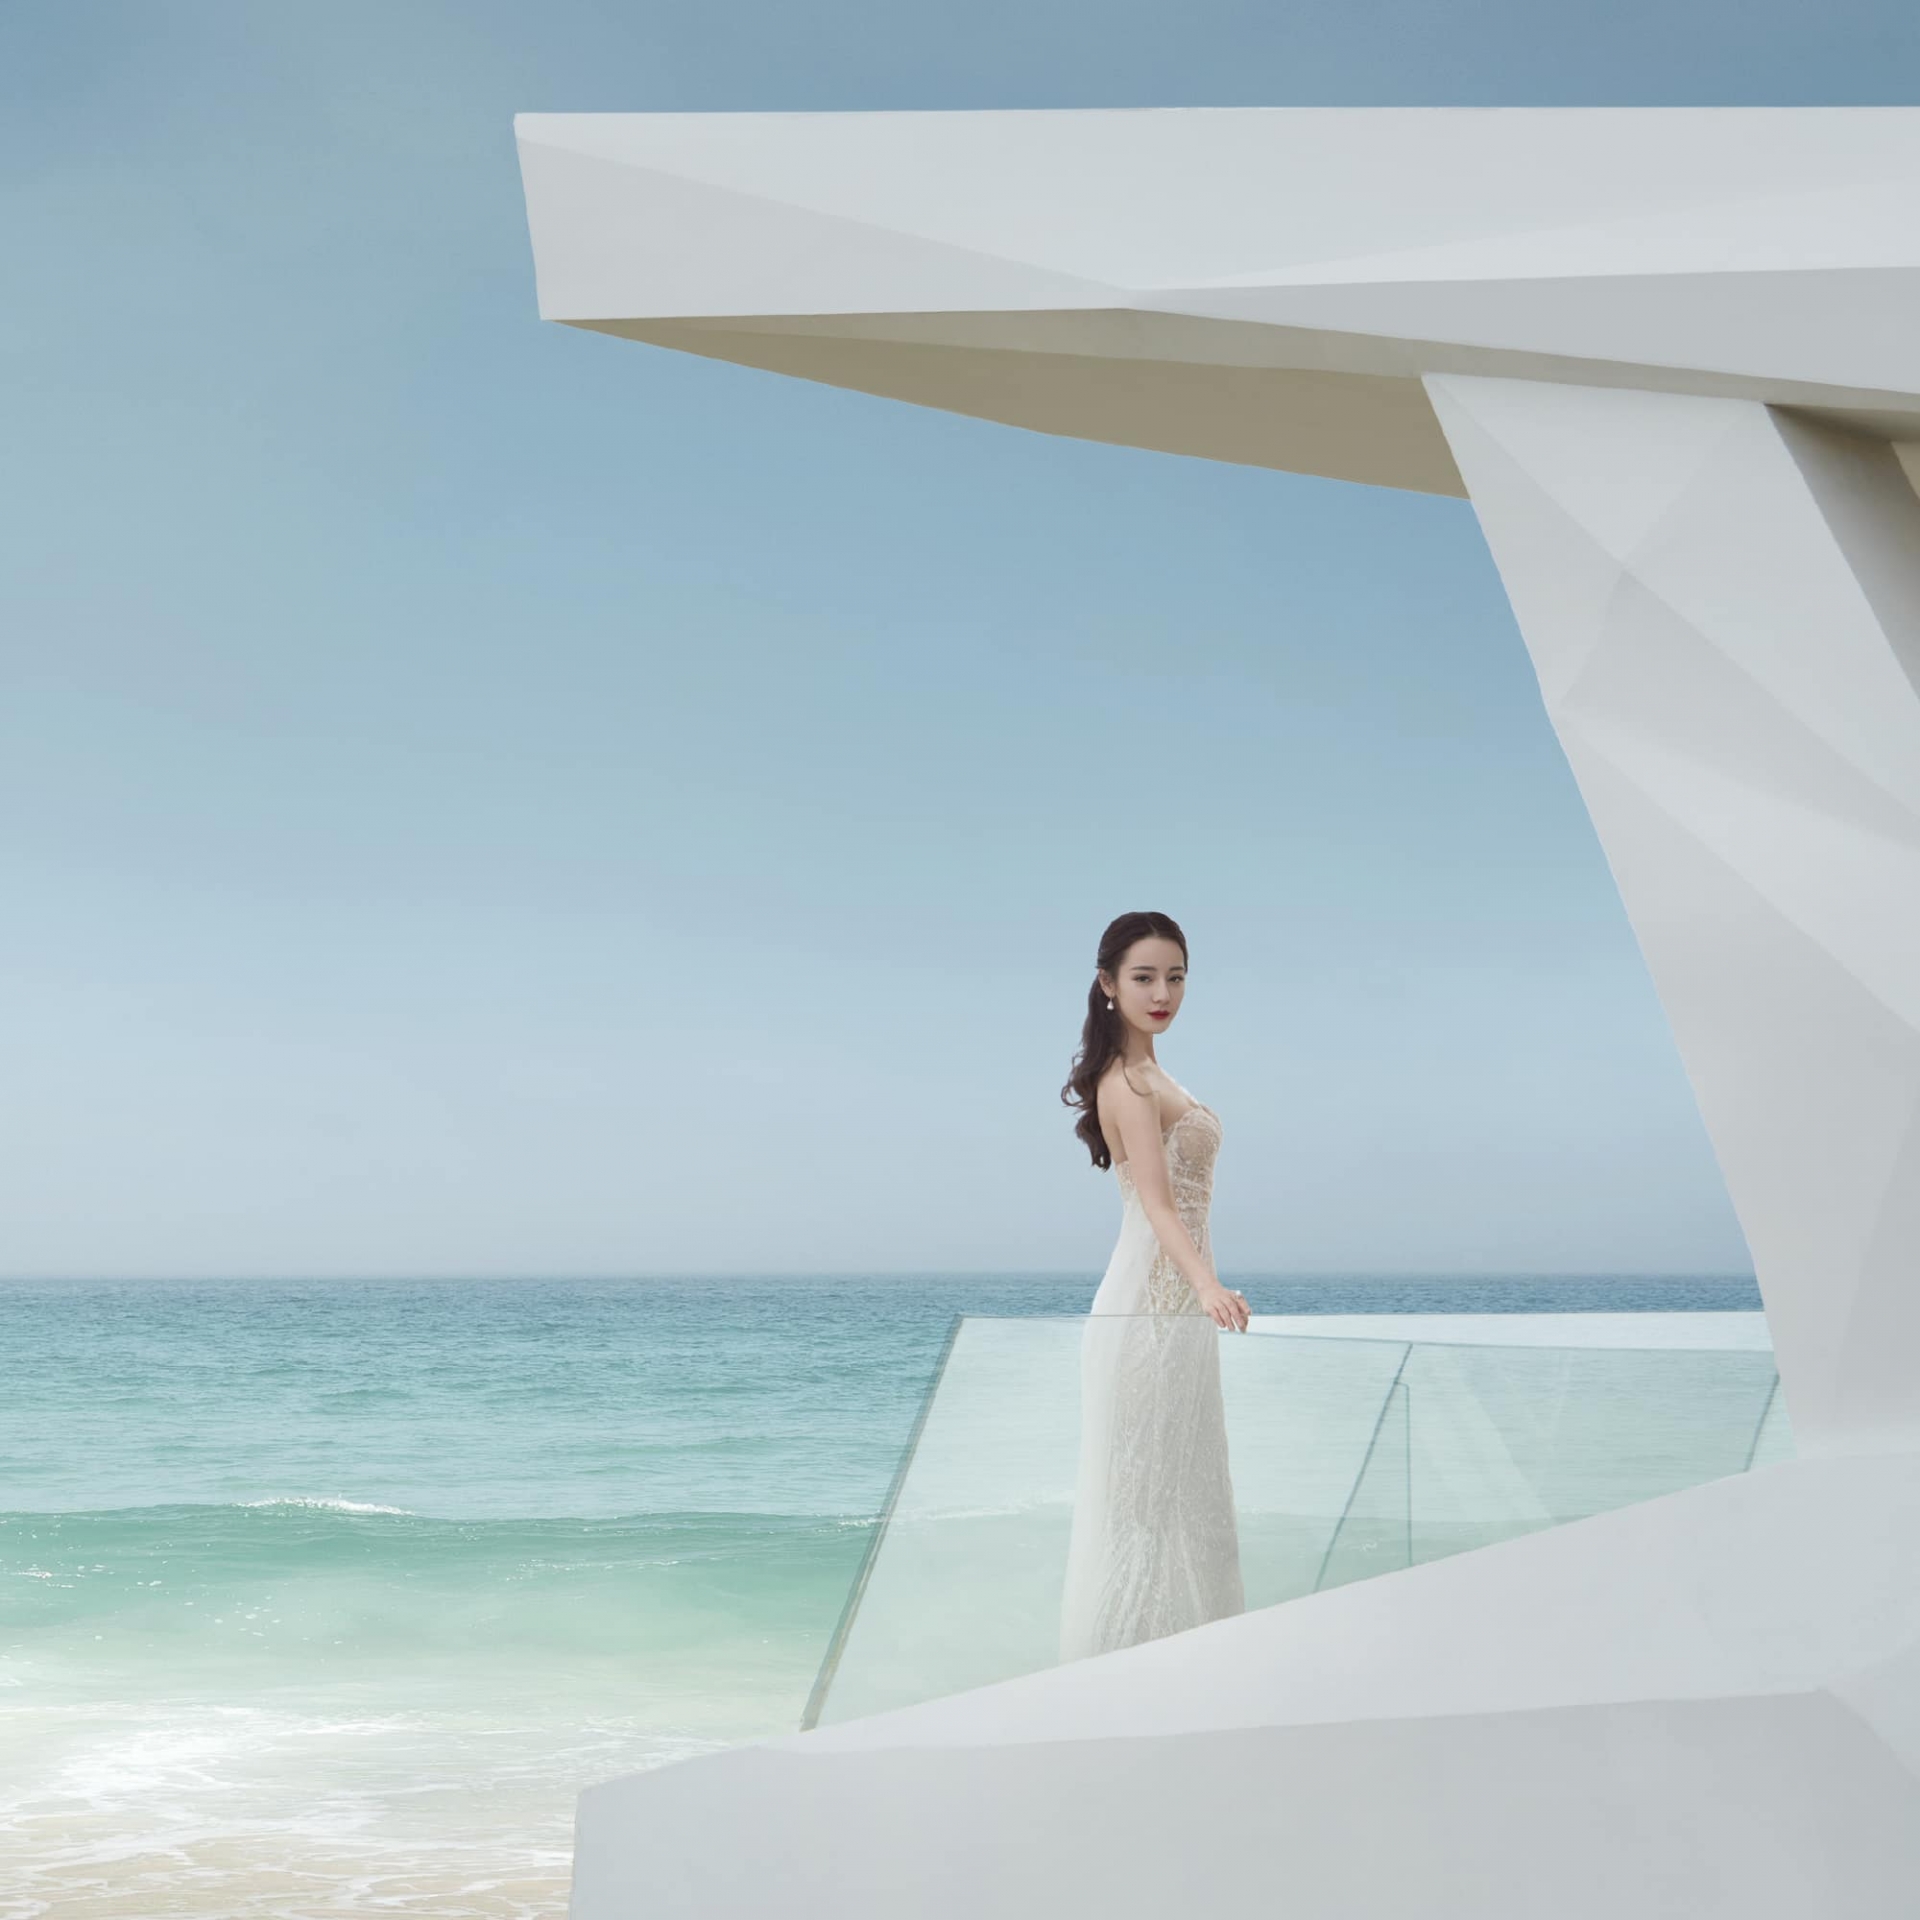 Bộ ảnh Địch Lệ Nhiệt Ba diện váy cưới bất ngờ hot trở lại: Nhan sắc, vóc dáng thuộc hàng top Cbiz 2